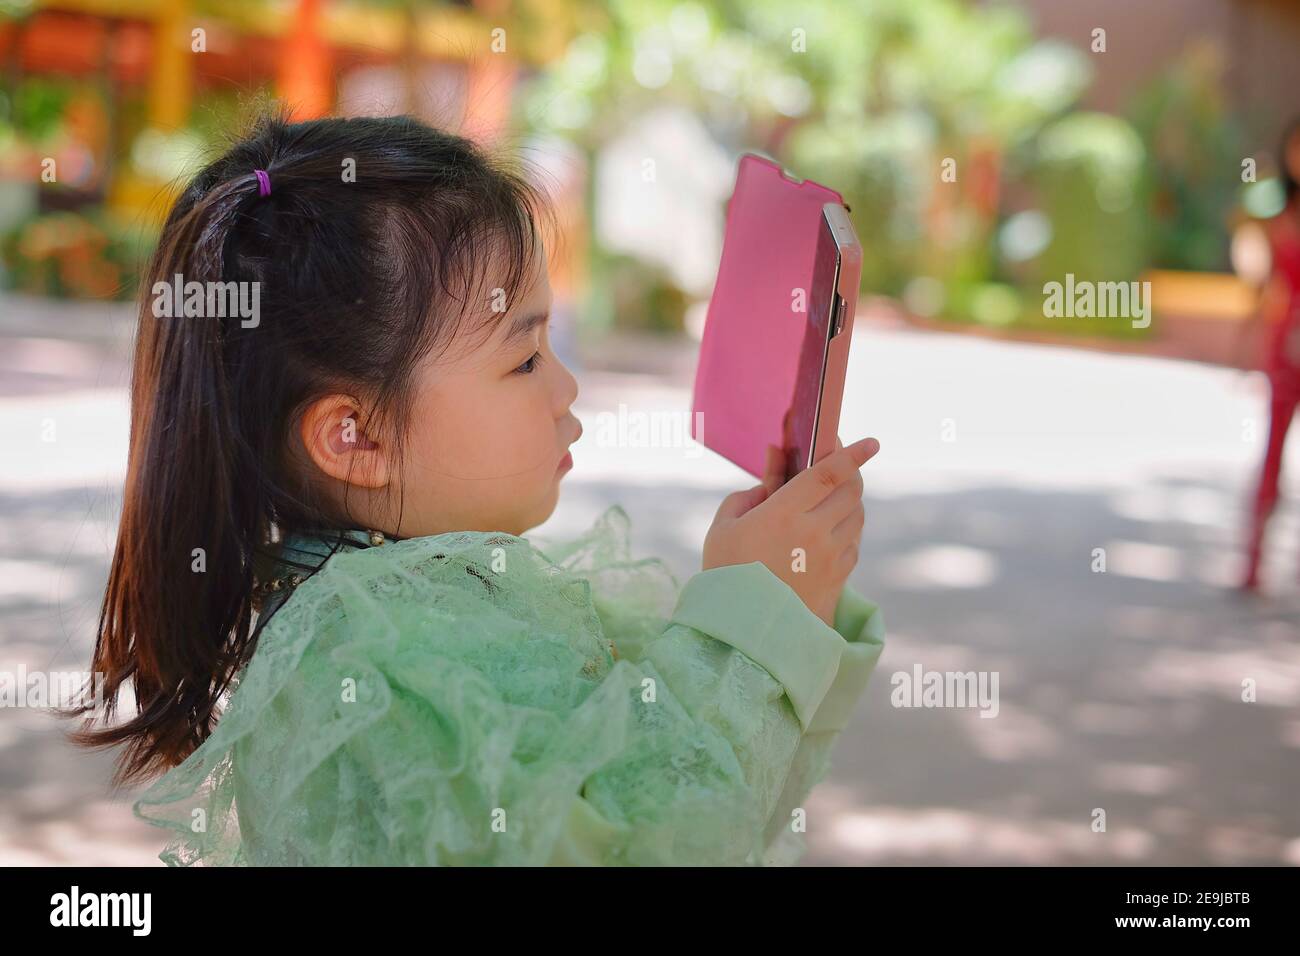 Une jolie jeune fille asiatique tient un smartphone rose, essayant de prendre une photo pendant ses vacances. Banque D'Images